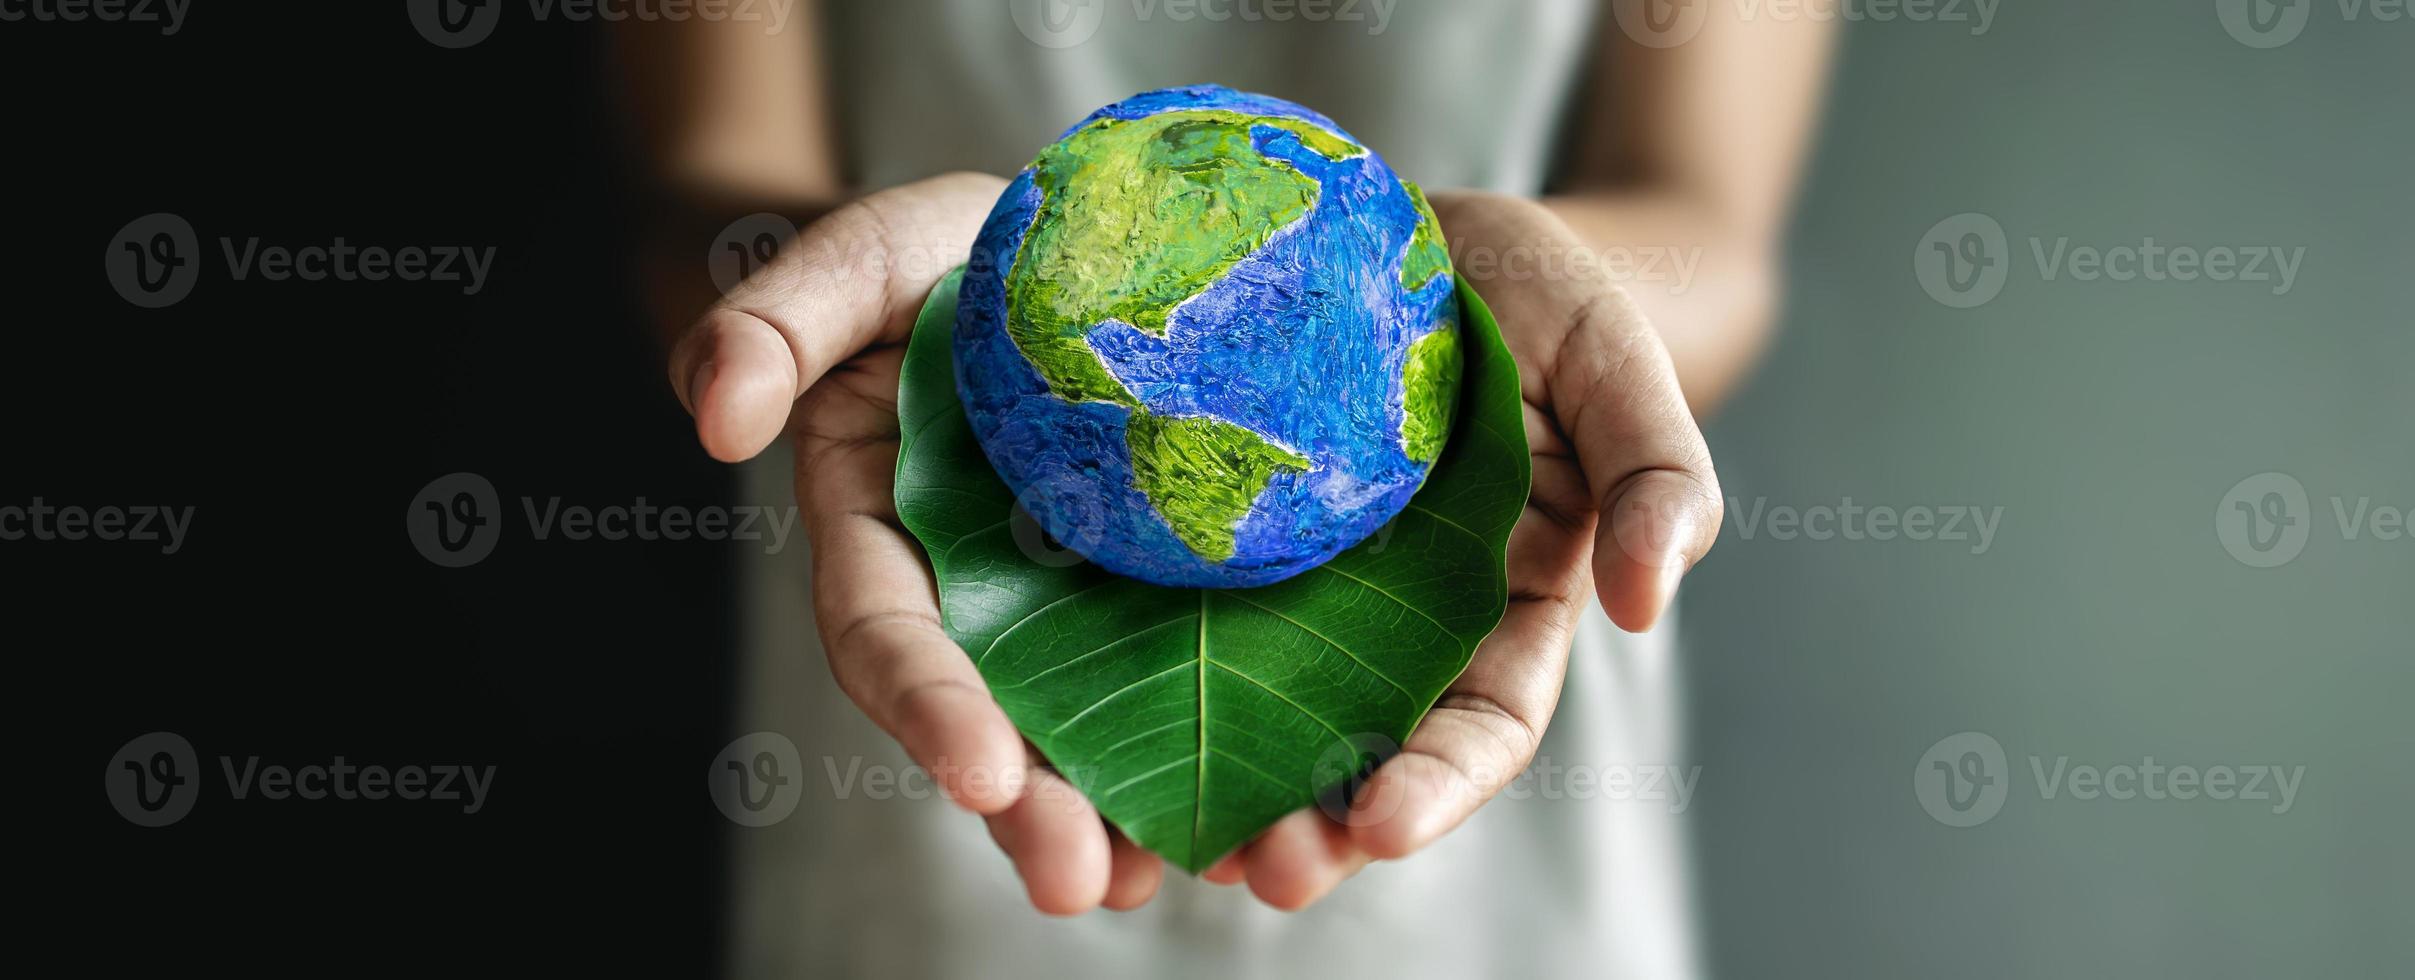 concept de la journée mondiale de la terre. énergie verte, ressources renouvelables et durables. protection de l'environnement et de l'écologie. main embrassant une feuille verte et un globe fait à la main photo